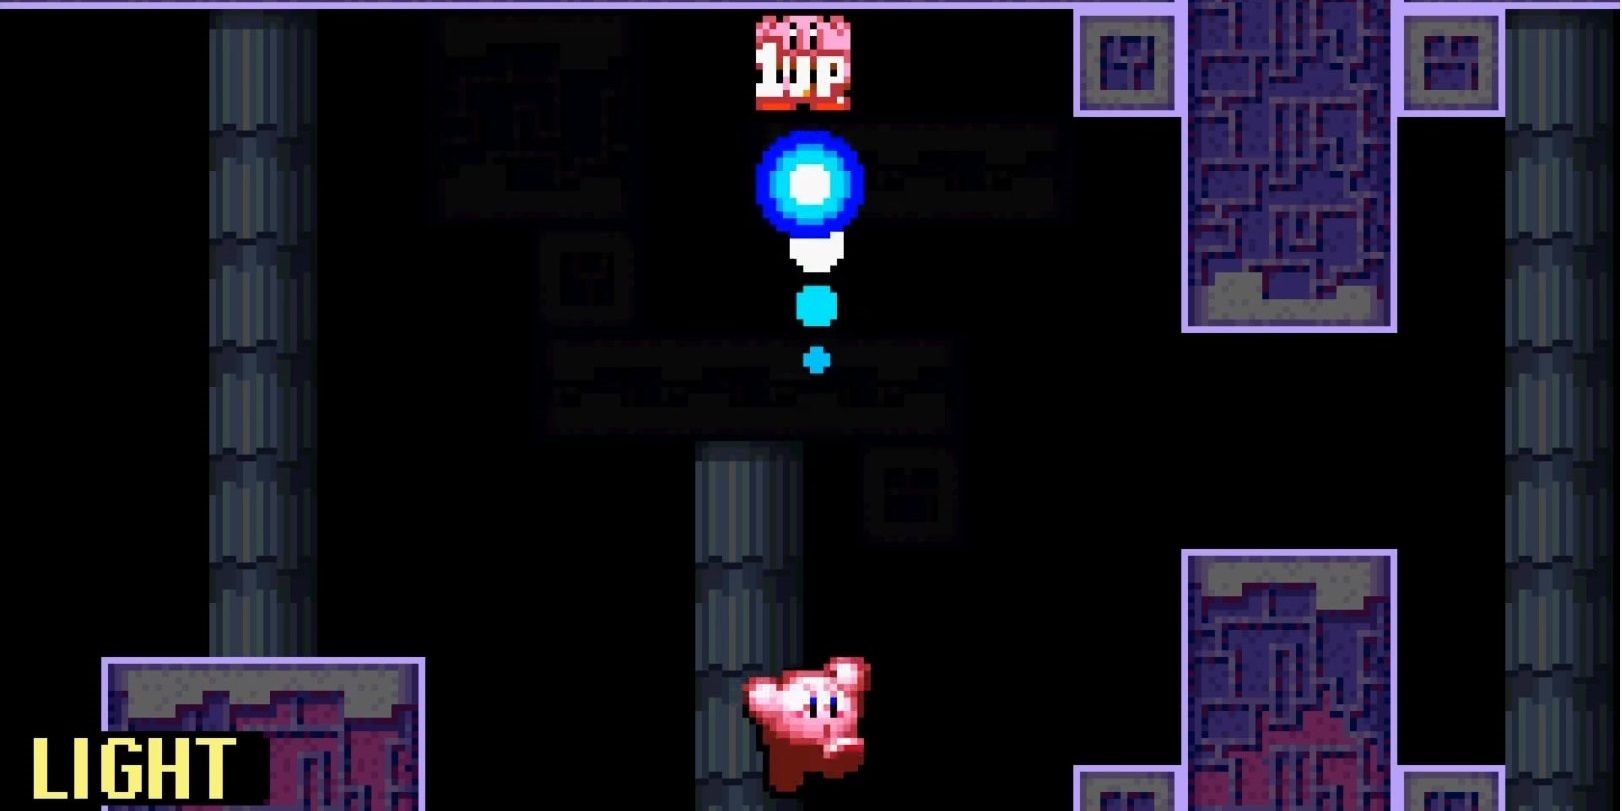 Kirbys Light Ability 1